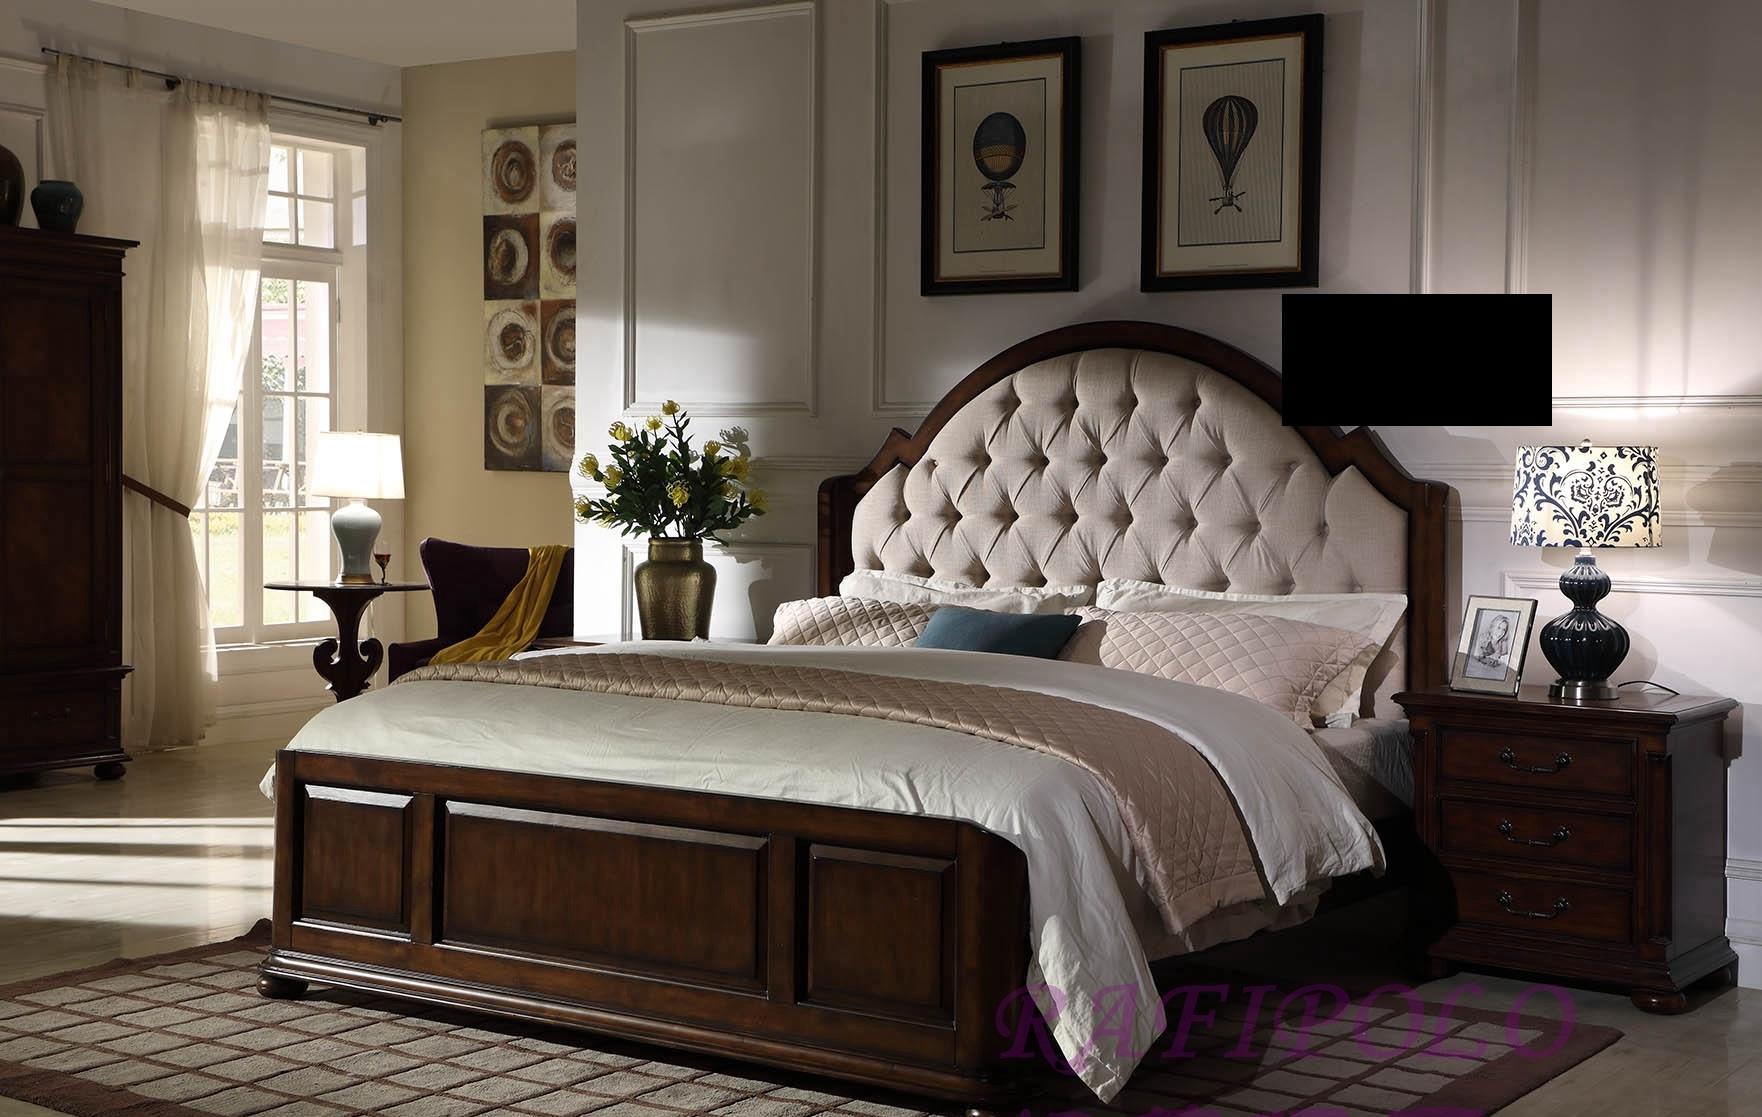 Bett Polsterbett Luxus Doppel Schlafzimmer Holz Leder Betten Chesterfield